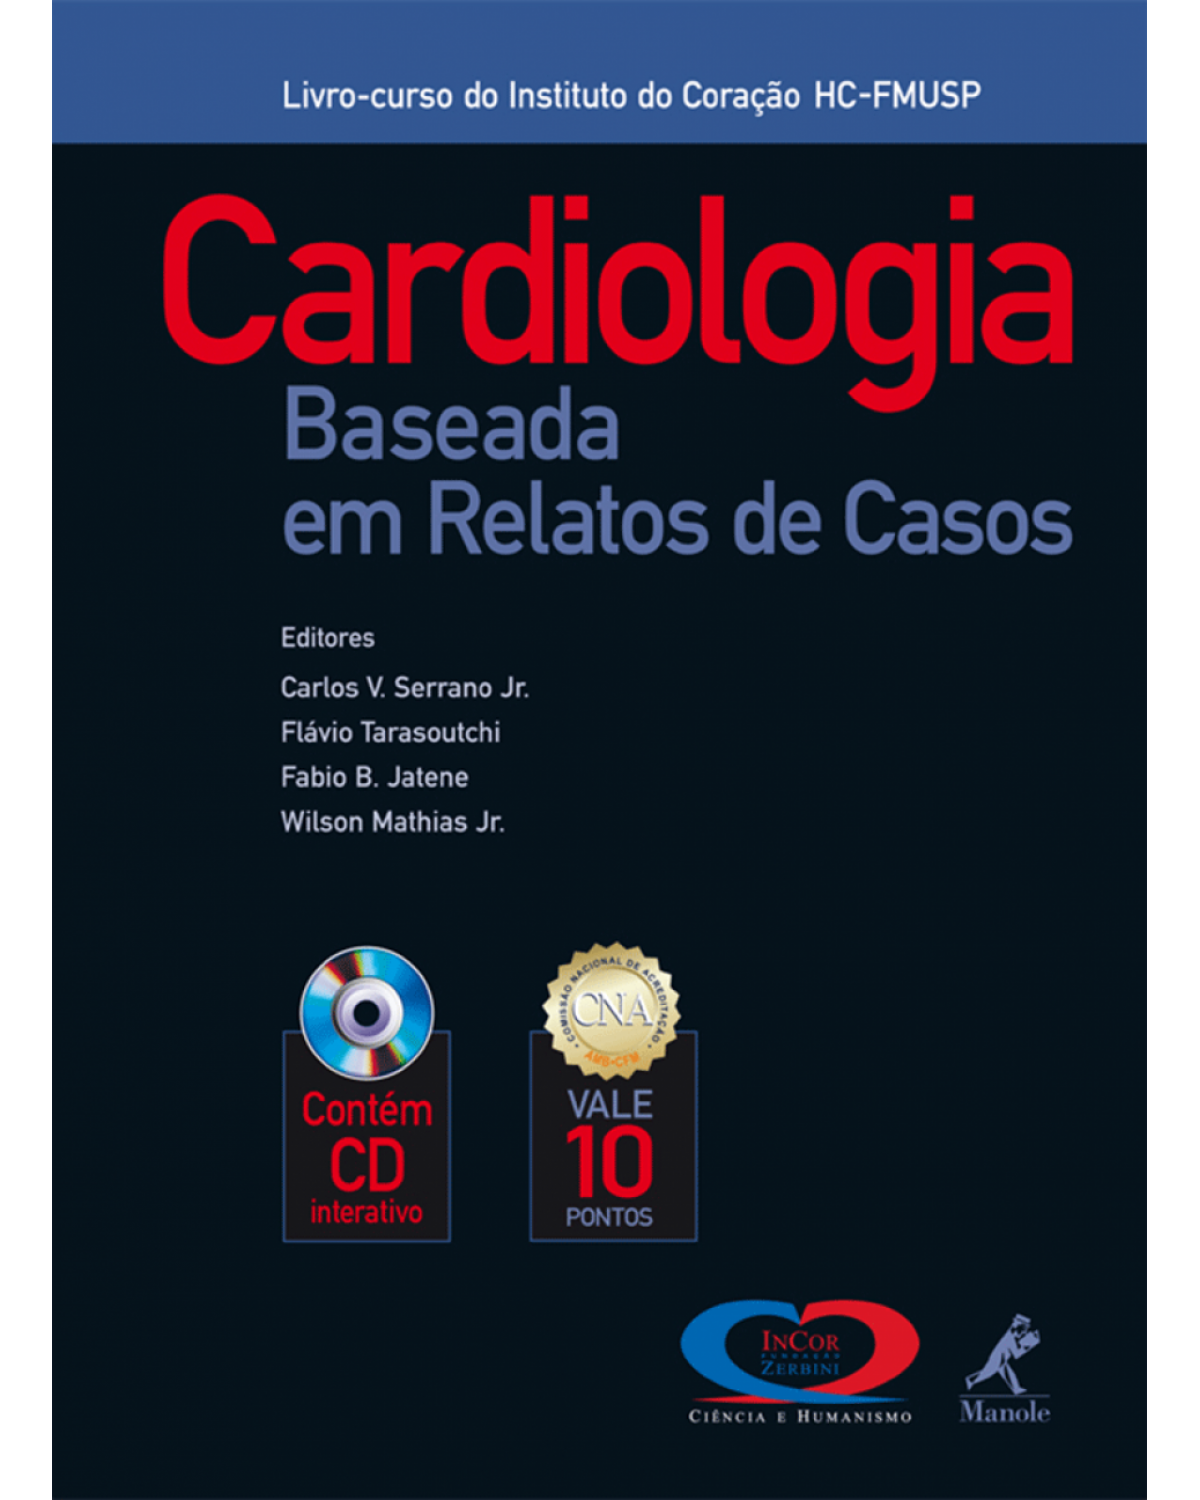 Cardiologia baseada em relatos de casos - Livro-curso do Instituto do Coração HC-FMUSP - 1ª Edição | 2006